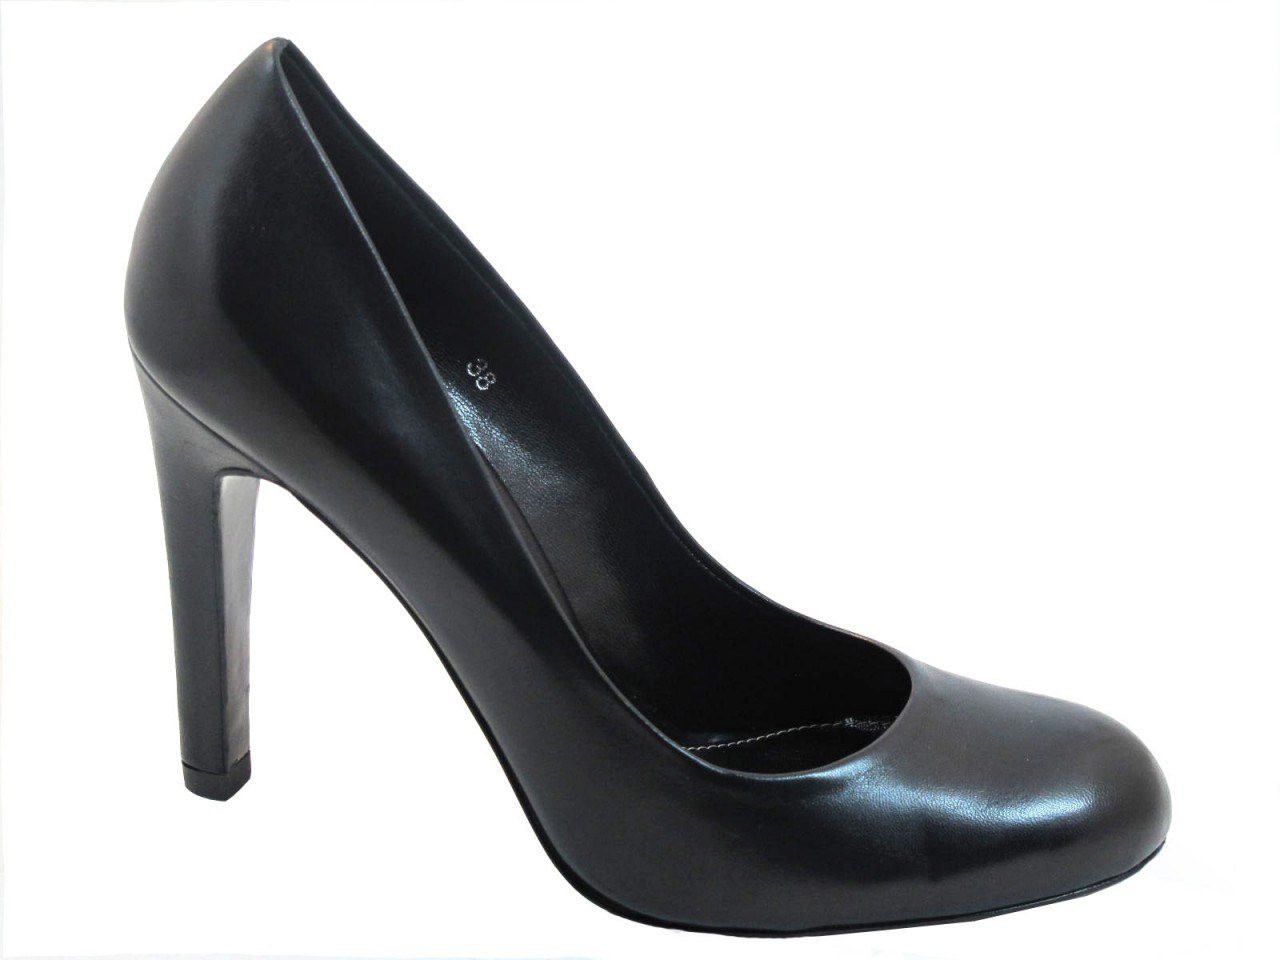 black pump heels